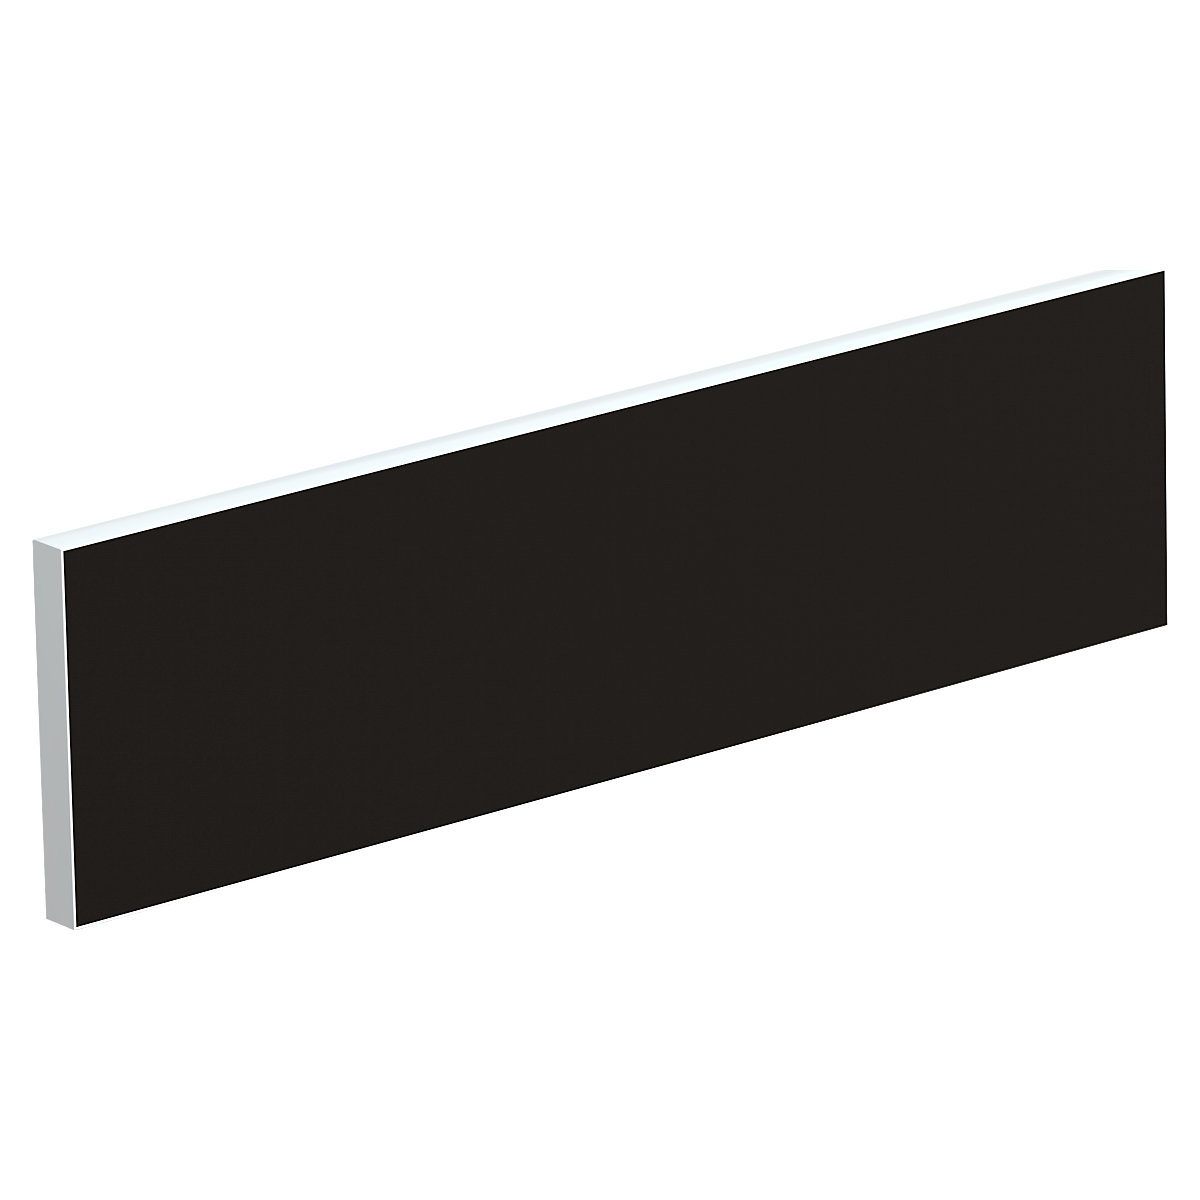 Tischtrennwand für Teamschreibtische, Breite 1400 mm, Bezug schwarz-4